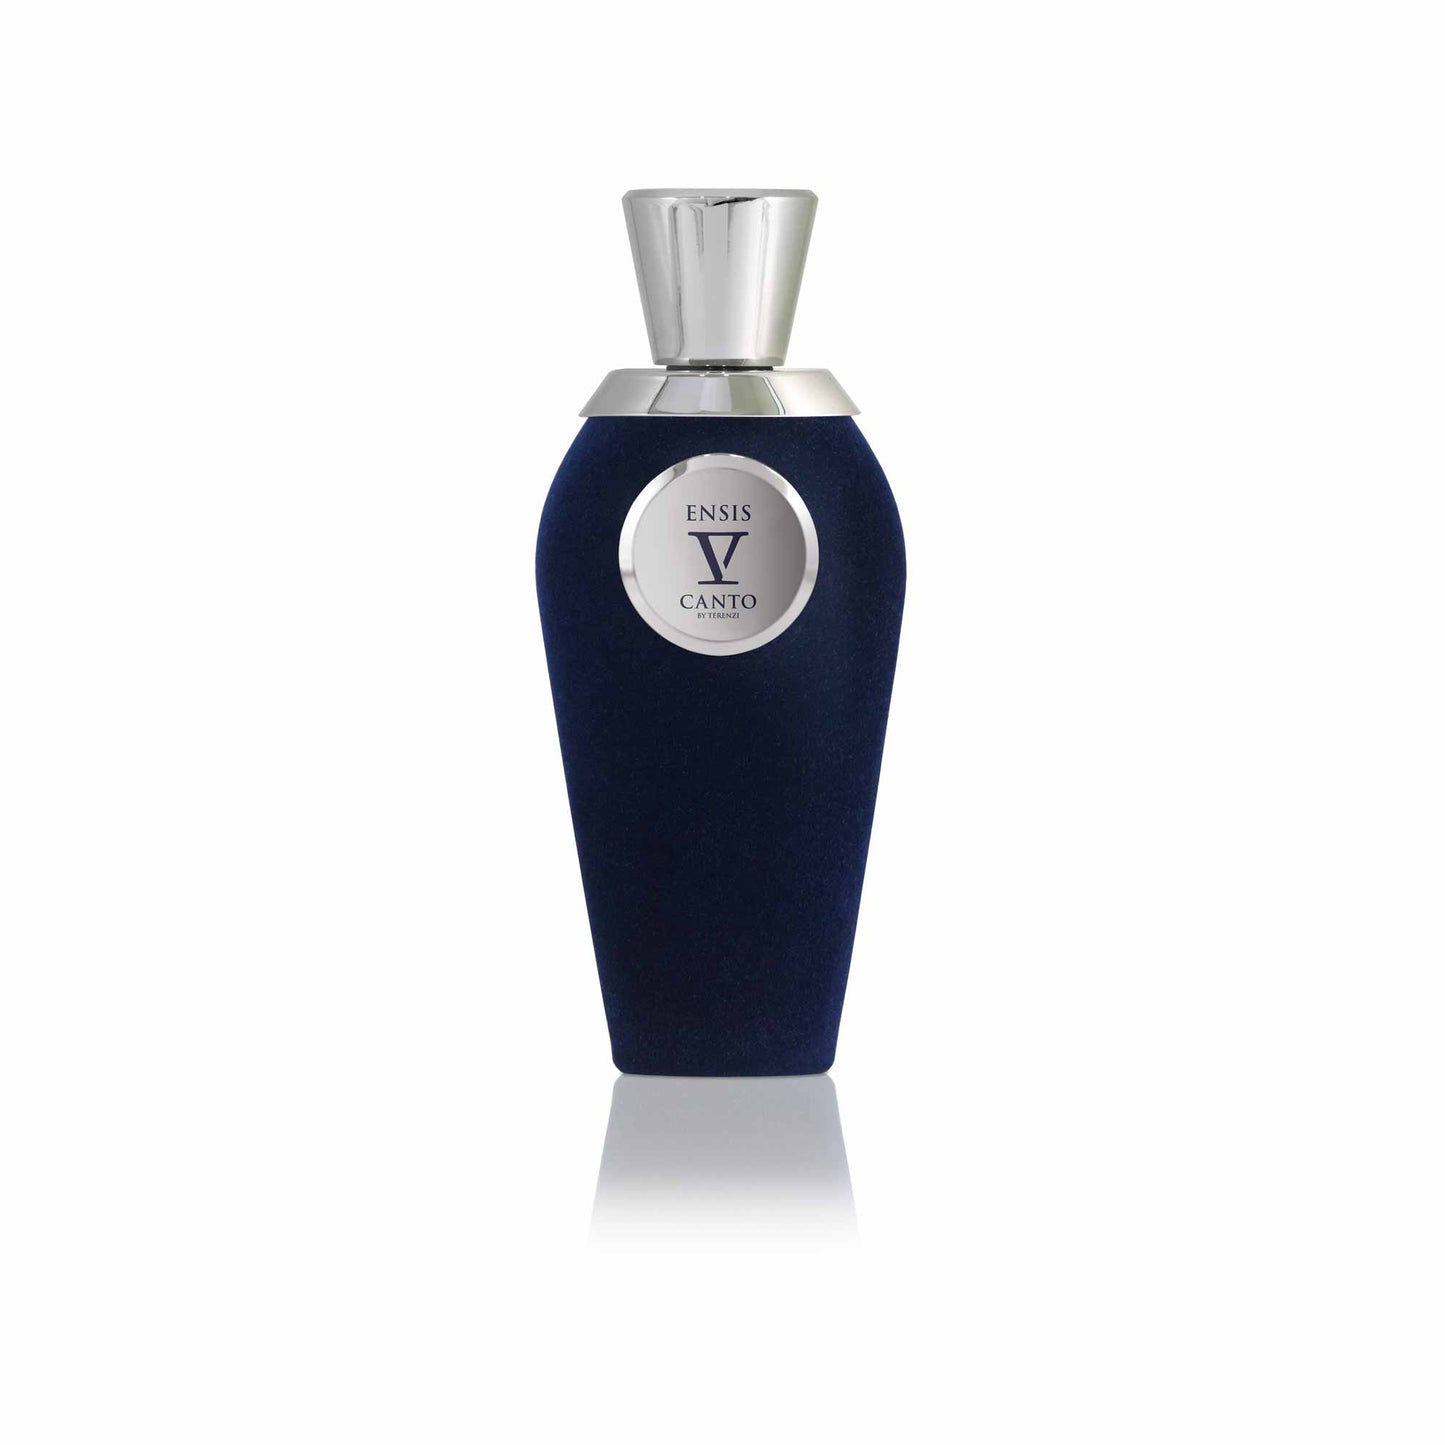 ENSIS 1.5 Sample Vial - Extrait de Parfum